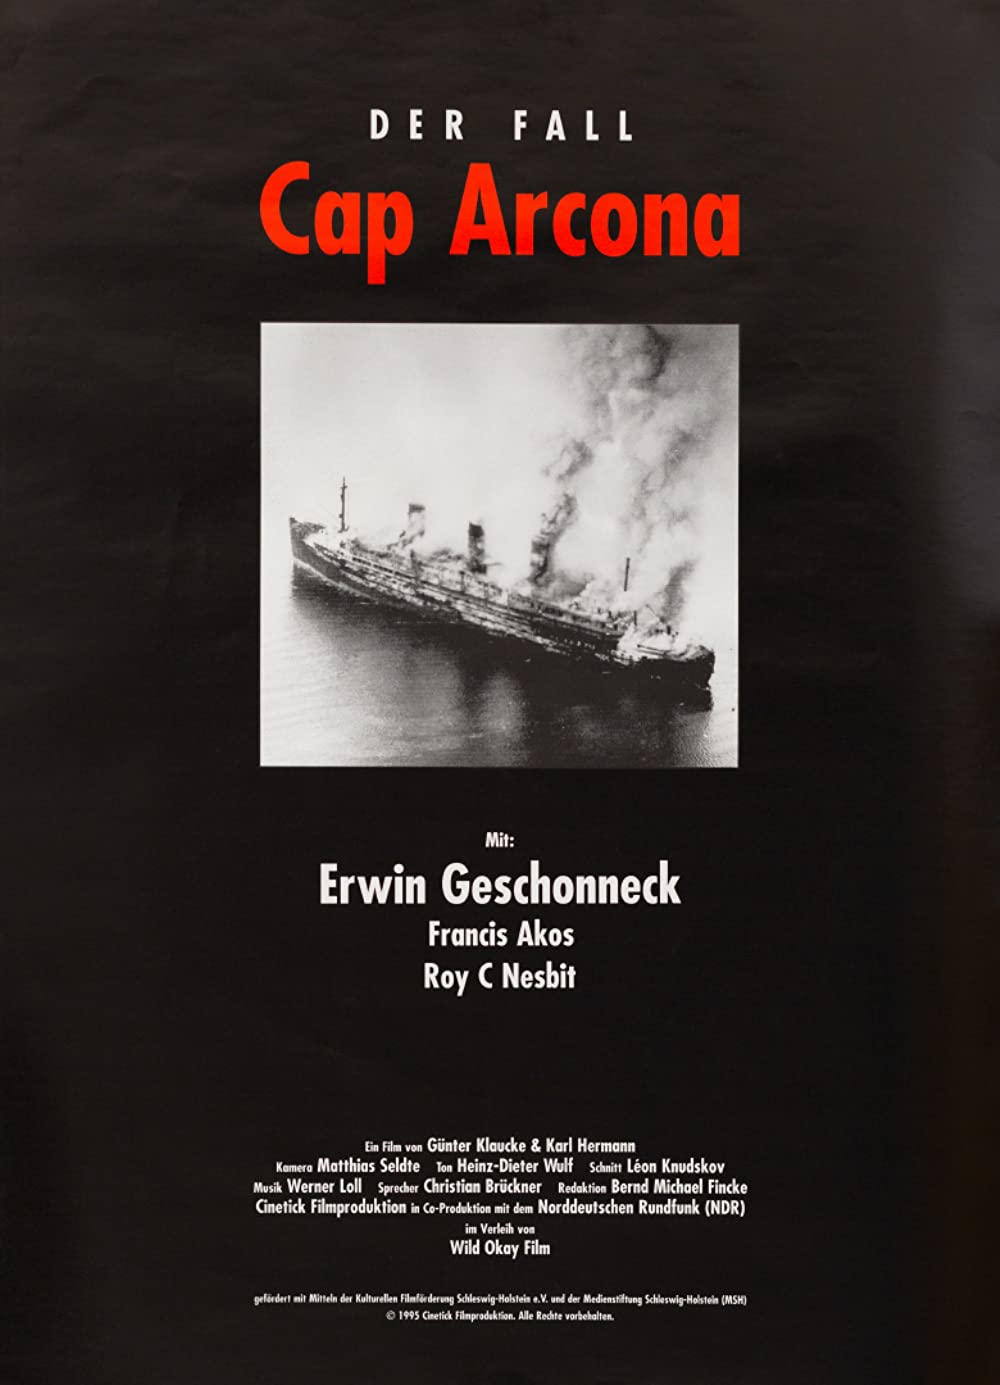 Filmbeschreibung zu Der Fall Cap Arcona